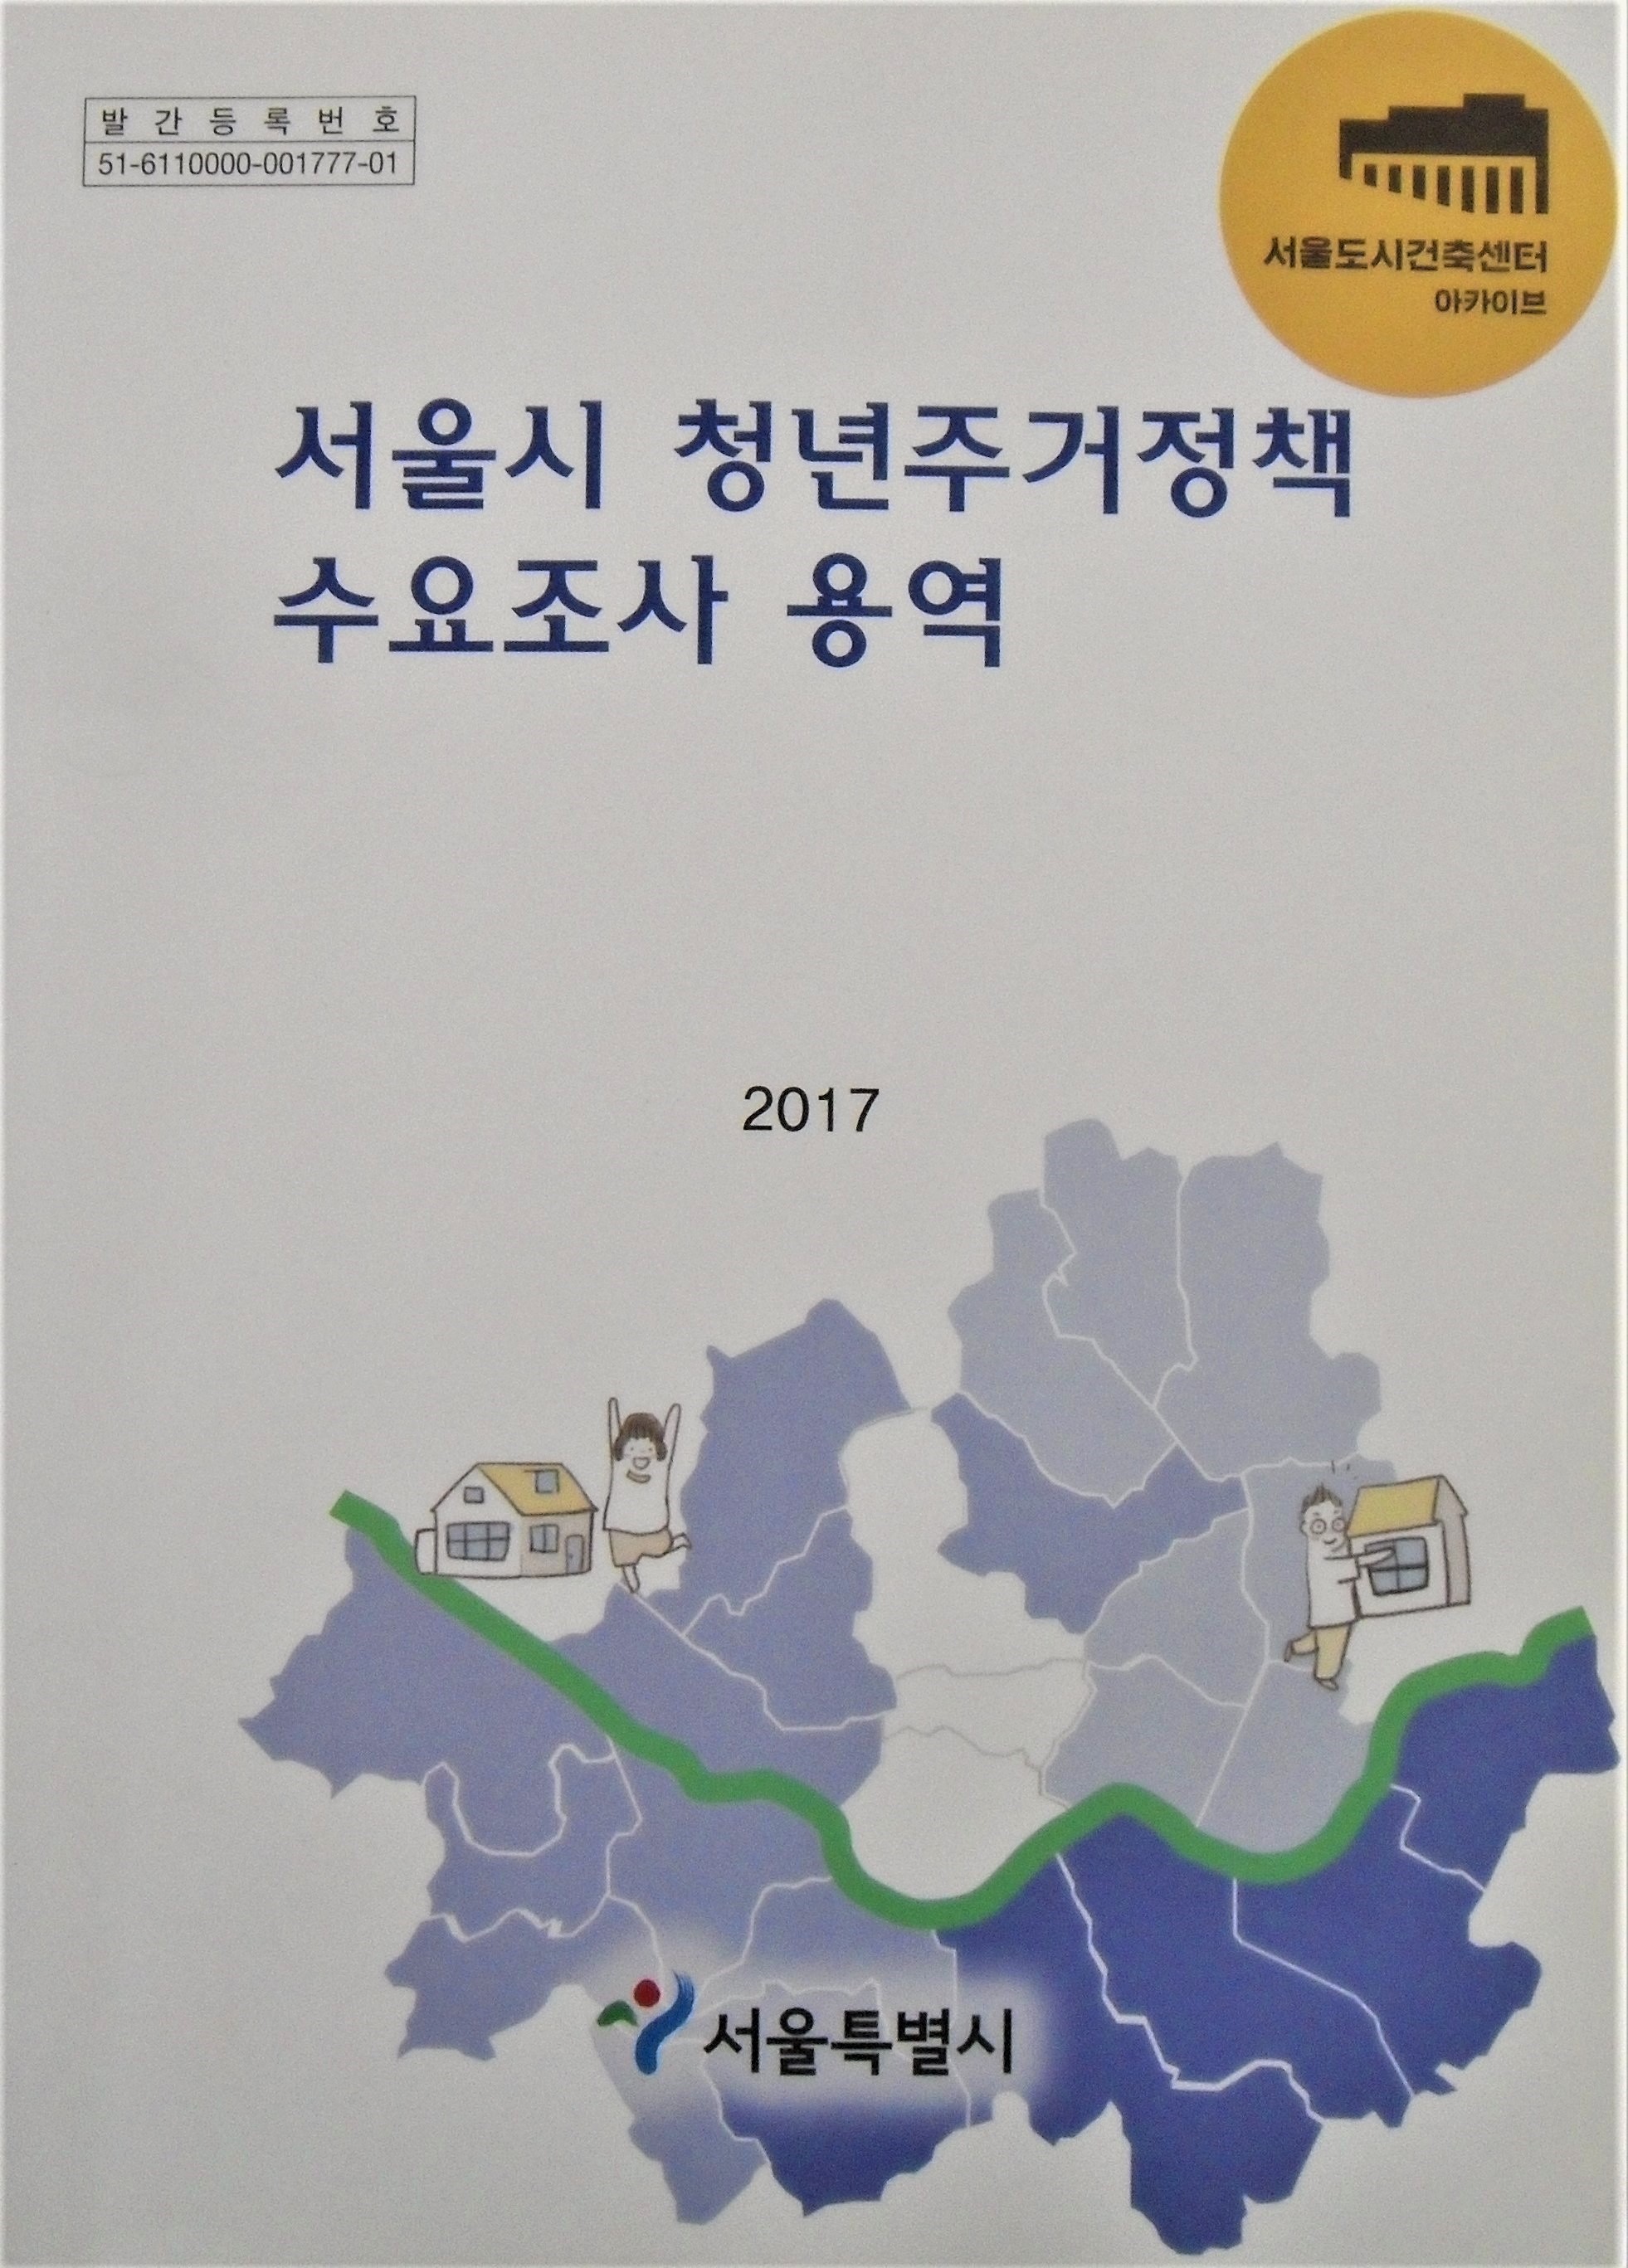 서울시 청년주거정책 수요조사 용역